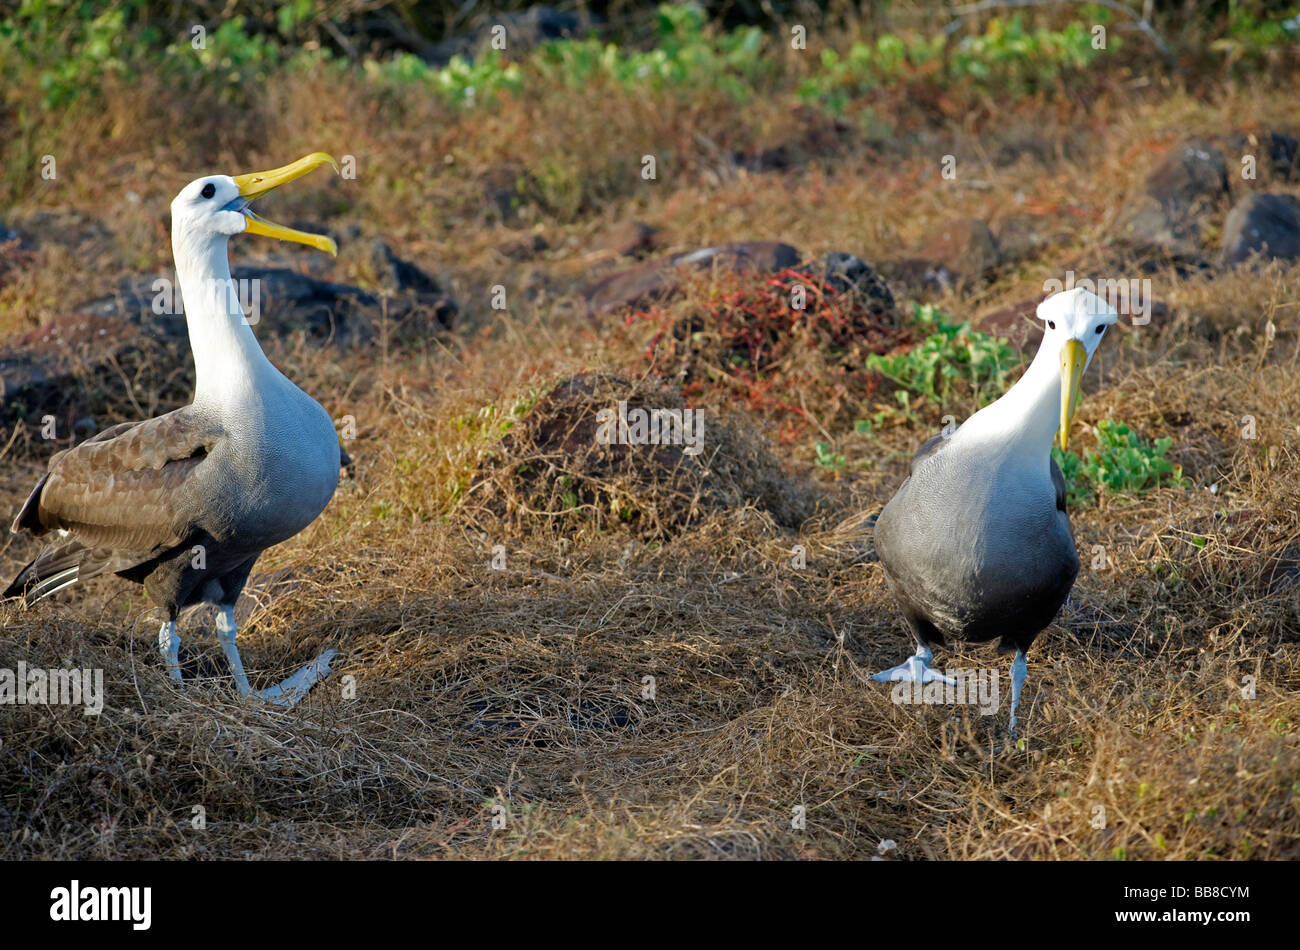 Winkte Albatross Altvögel während der Balz Ritual am Boden auf Espanola Insel, Galapagos, Pacific. Schnäbel klicken und zu Fuß Stockfoto